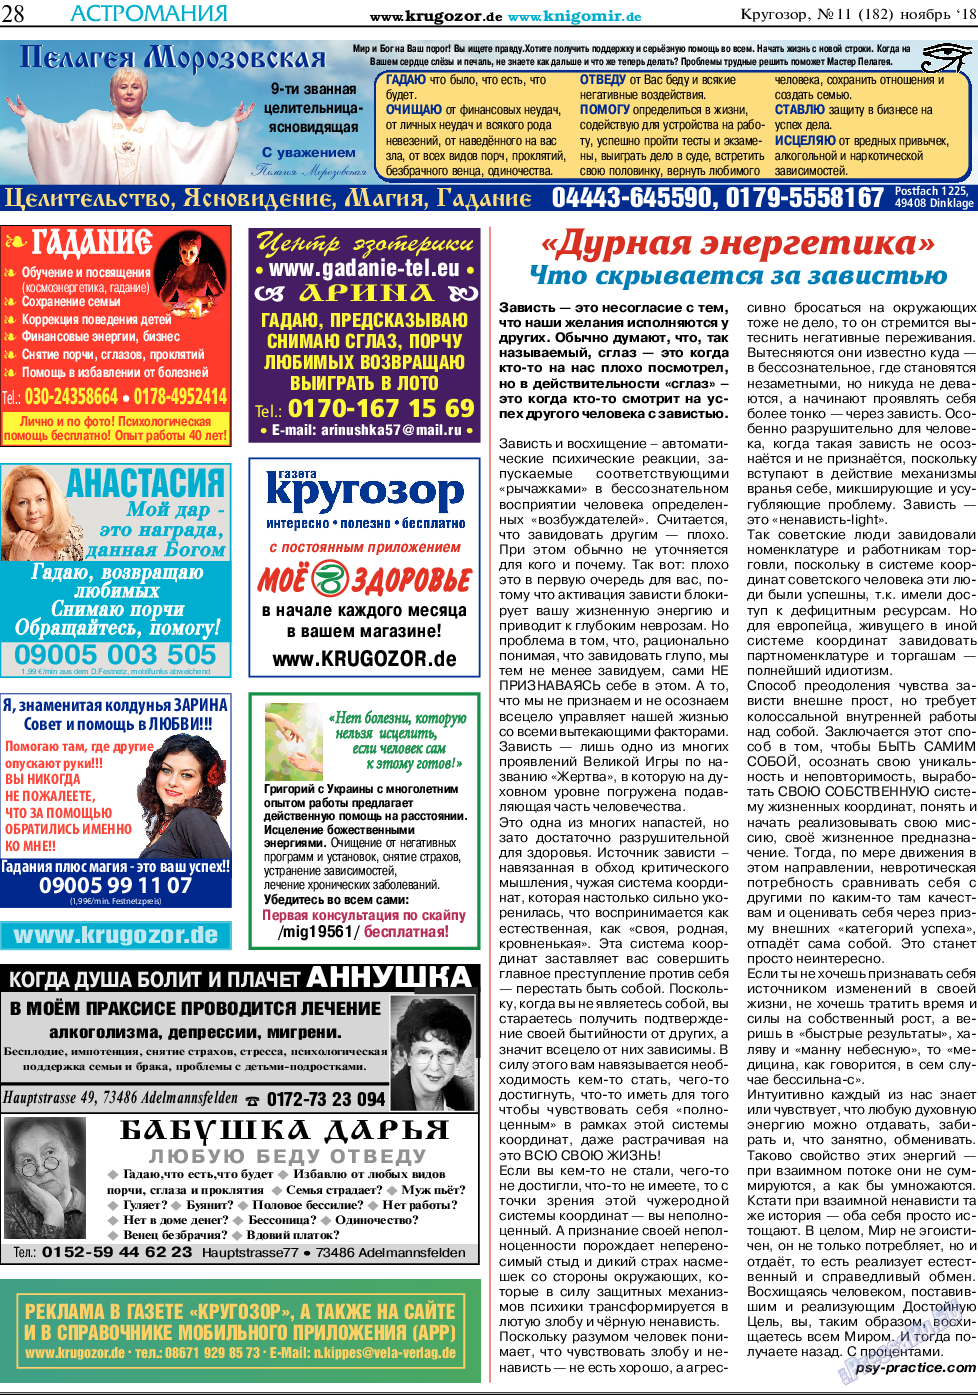 Кругозор, газета. 2018 №11 стр.28